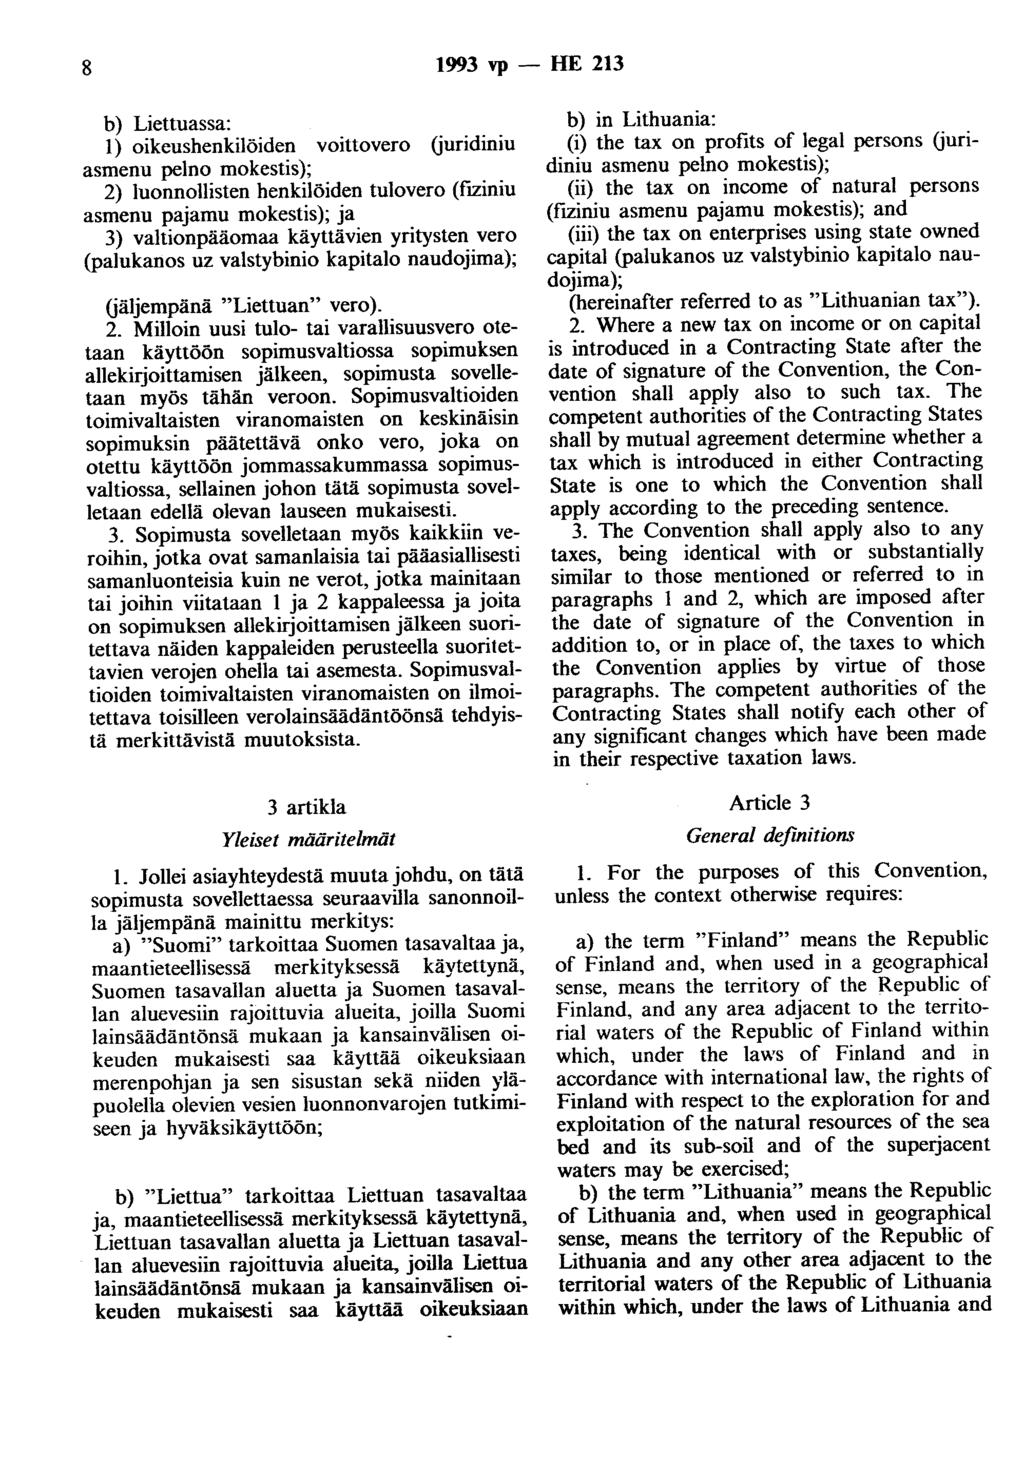 8 1993 vp - HE 213 b) Liettuassa: 1) oikeushenkilöiden voittovero (juridiniu asmenu pelno mokestis); 2) luonnollisten henkilöiden tulovero (fiziniu asmenu pajamu mokestis); ja 3) valtionpääomaa